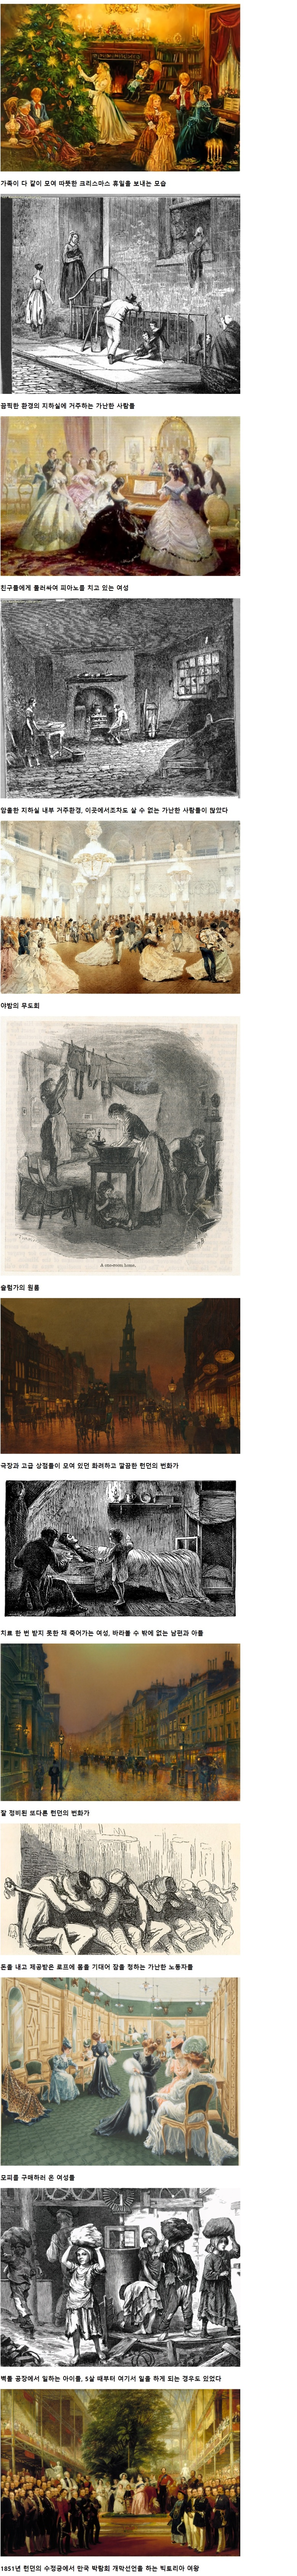 18-19세기 런던의 빈부격차